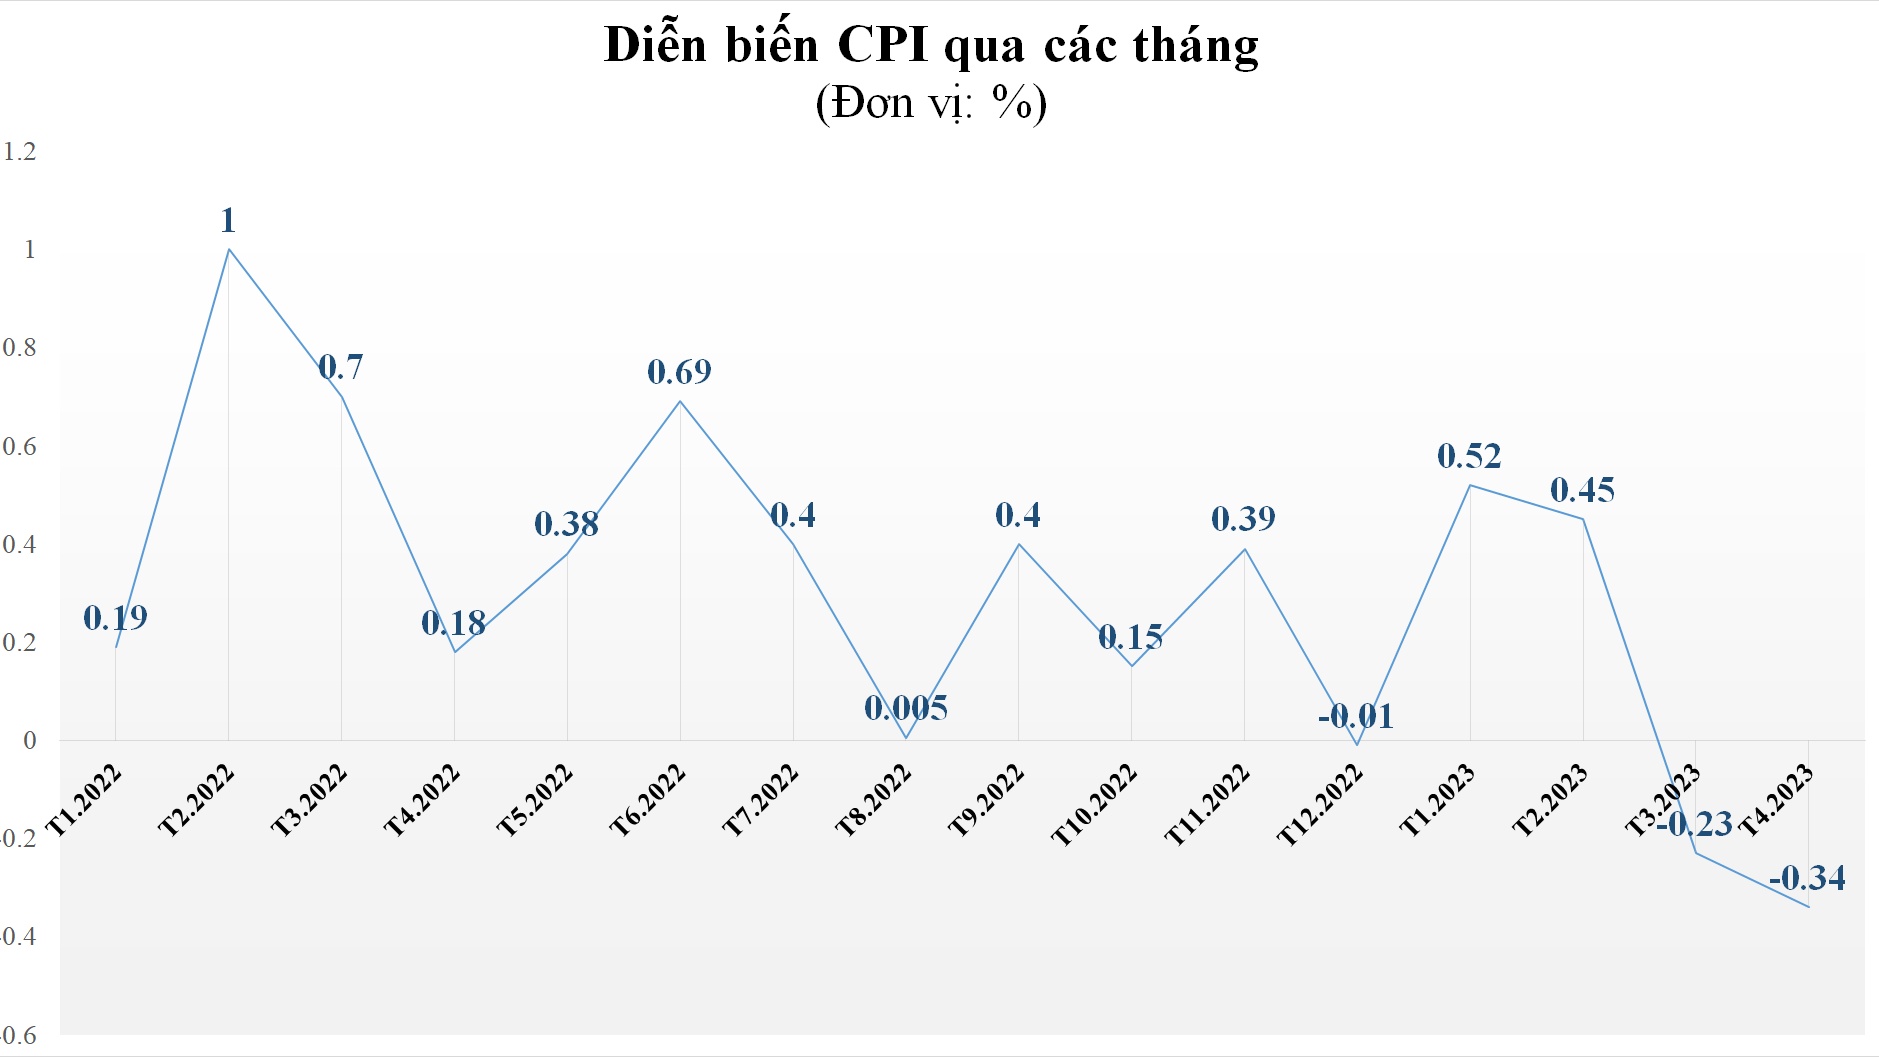 7/11 nhóm hàng hóa giảm giá, CPI tháng 4/2023 "hạ nhiệt" 0,34% so với tháng trước